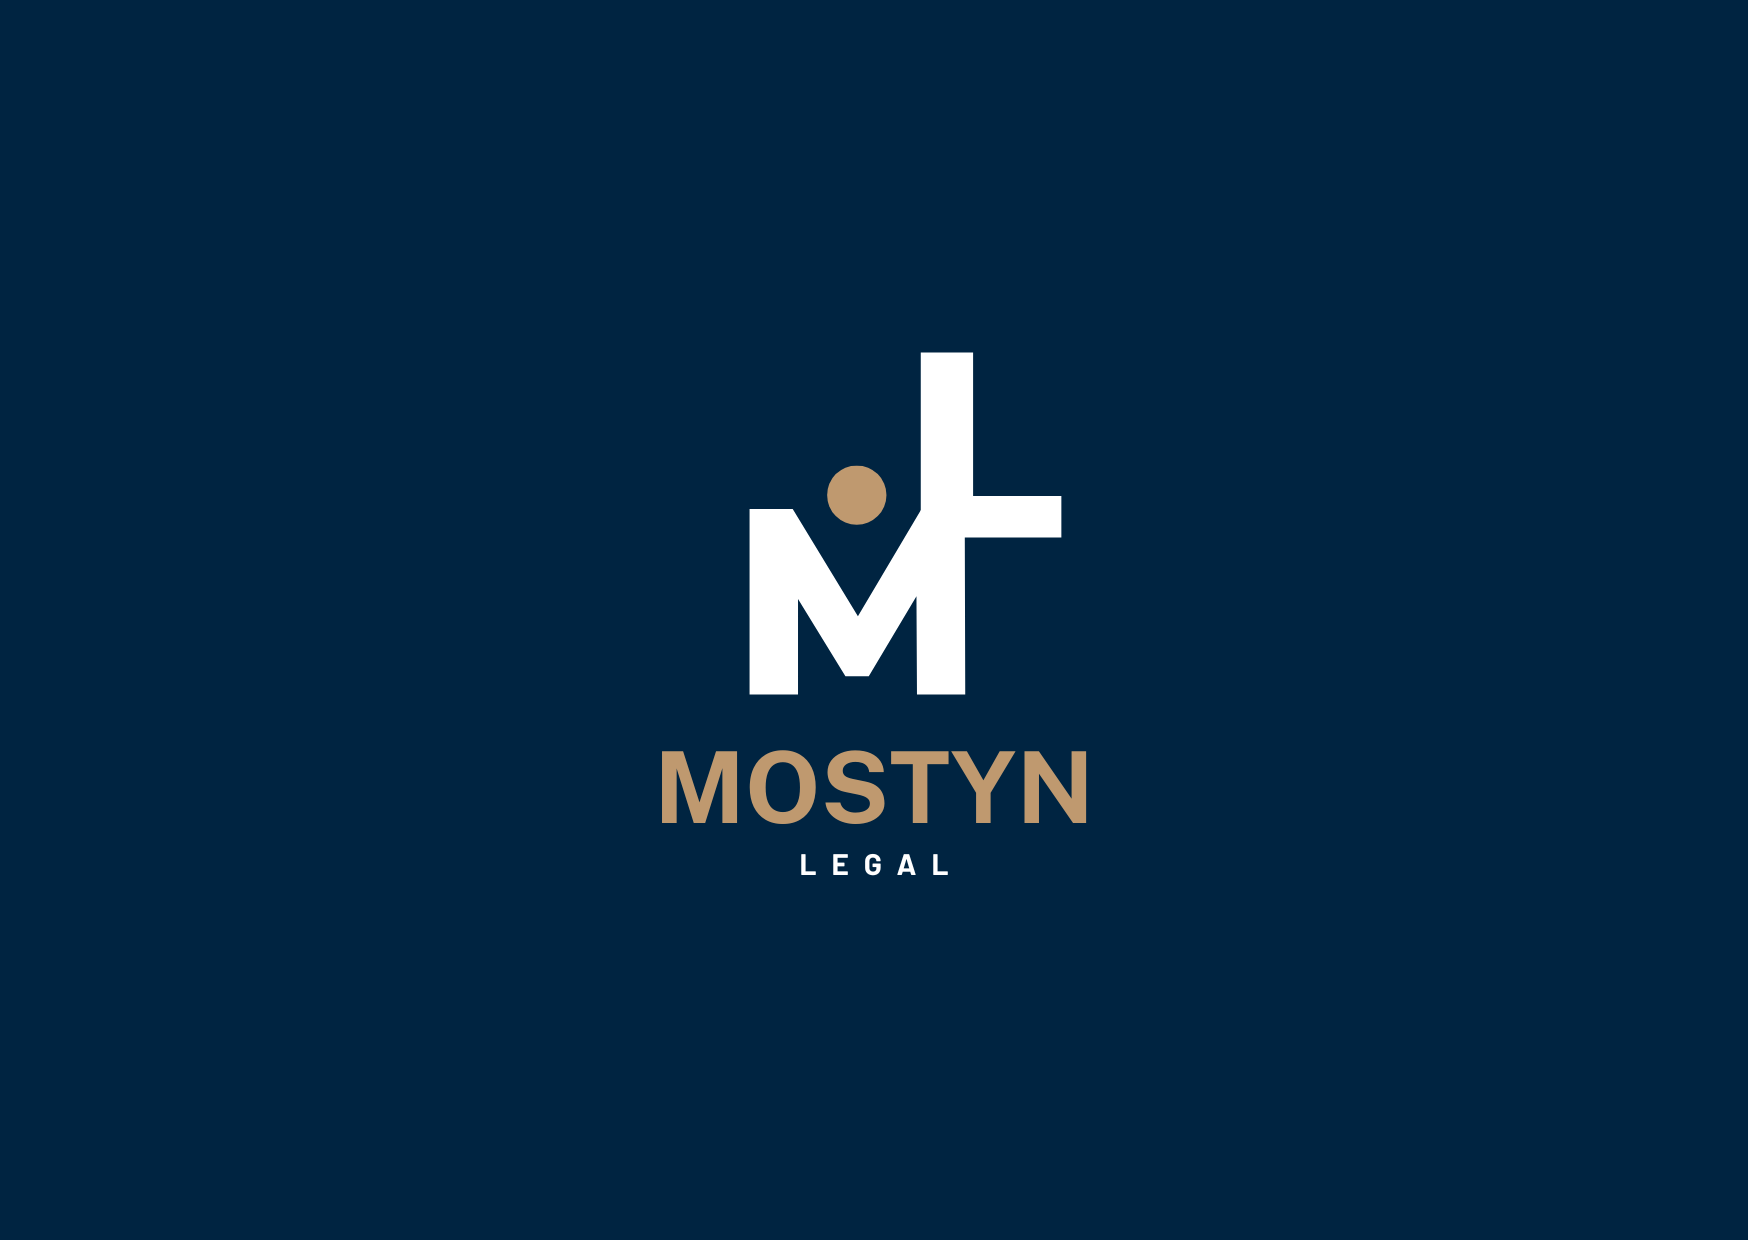 MOSTYN LEGAL - Brand